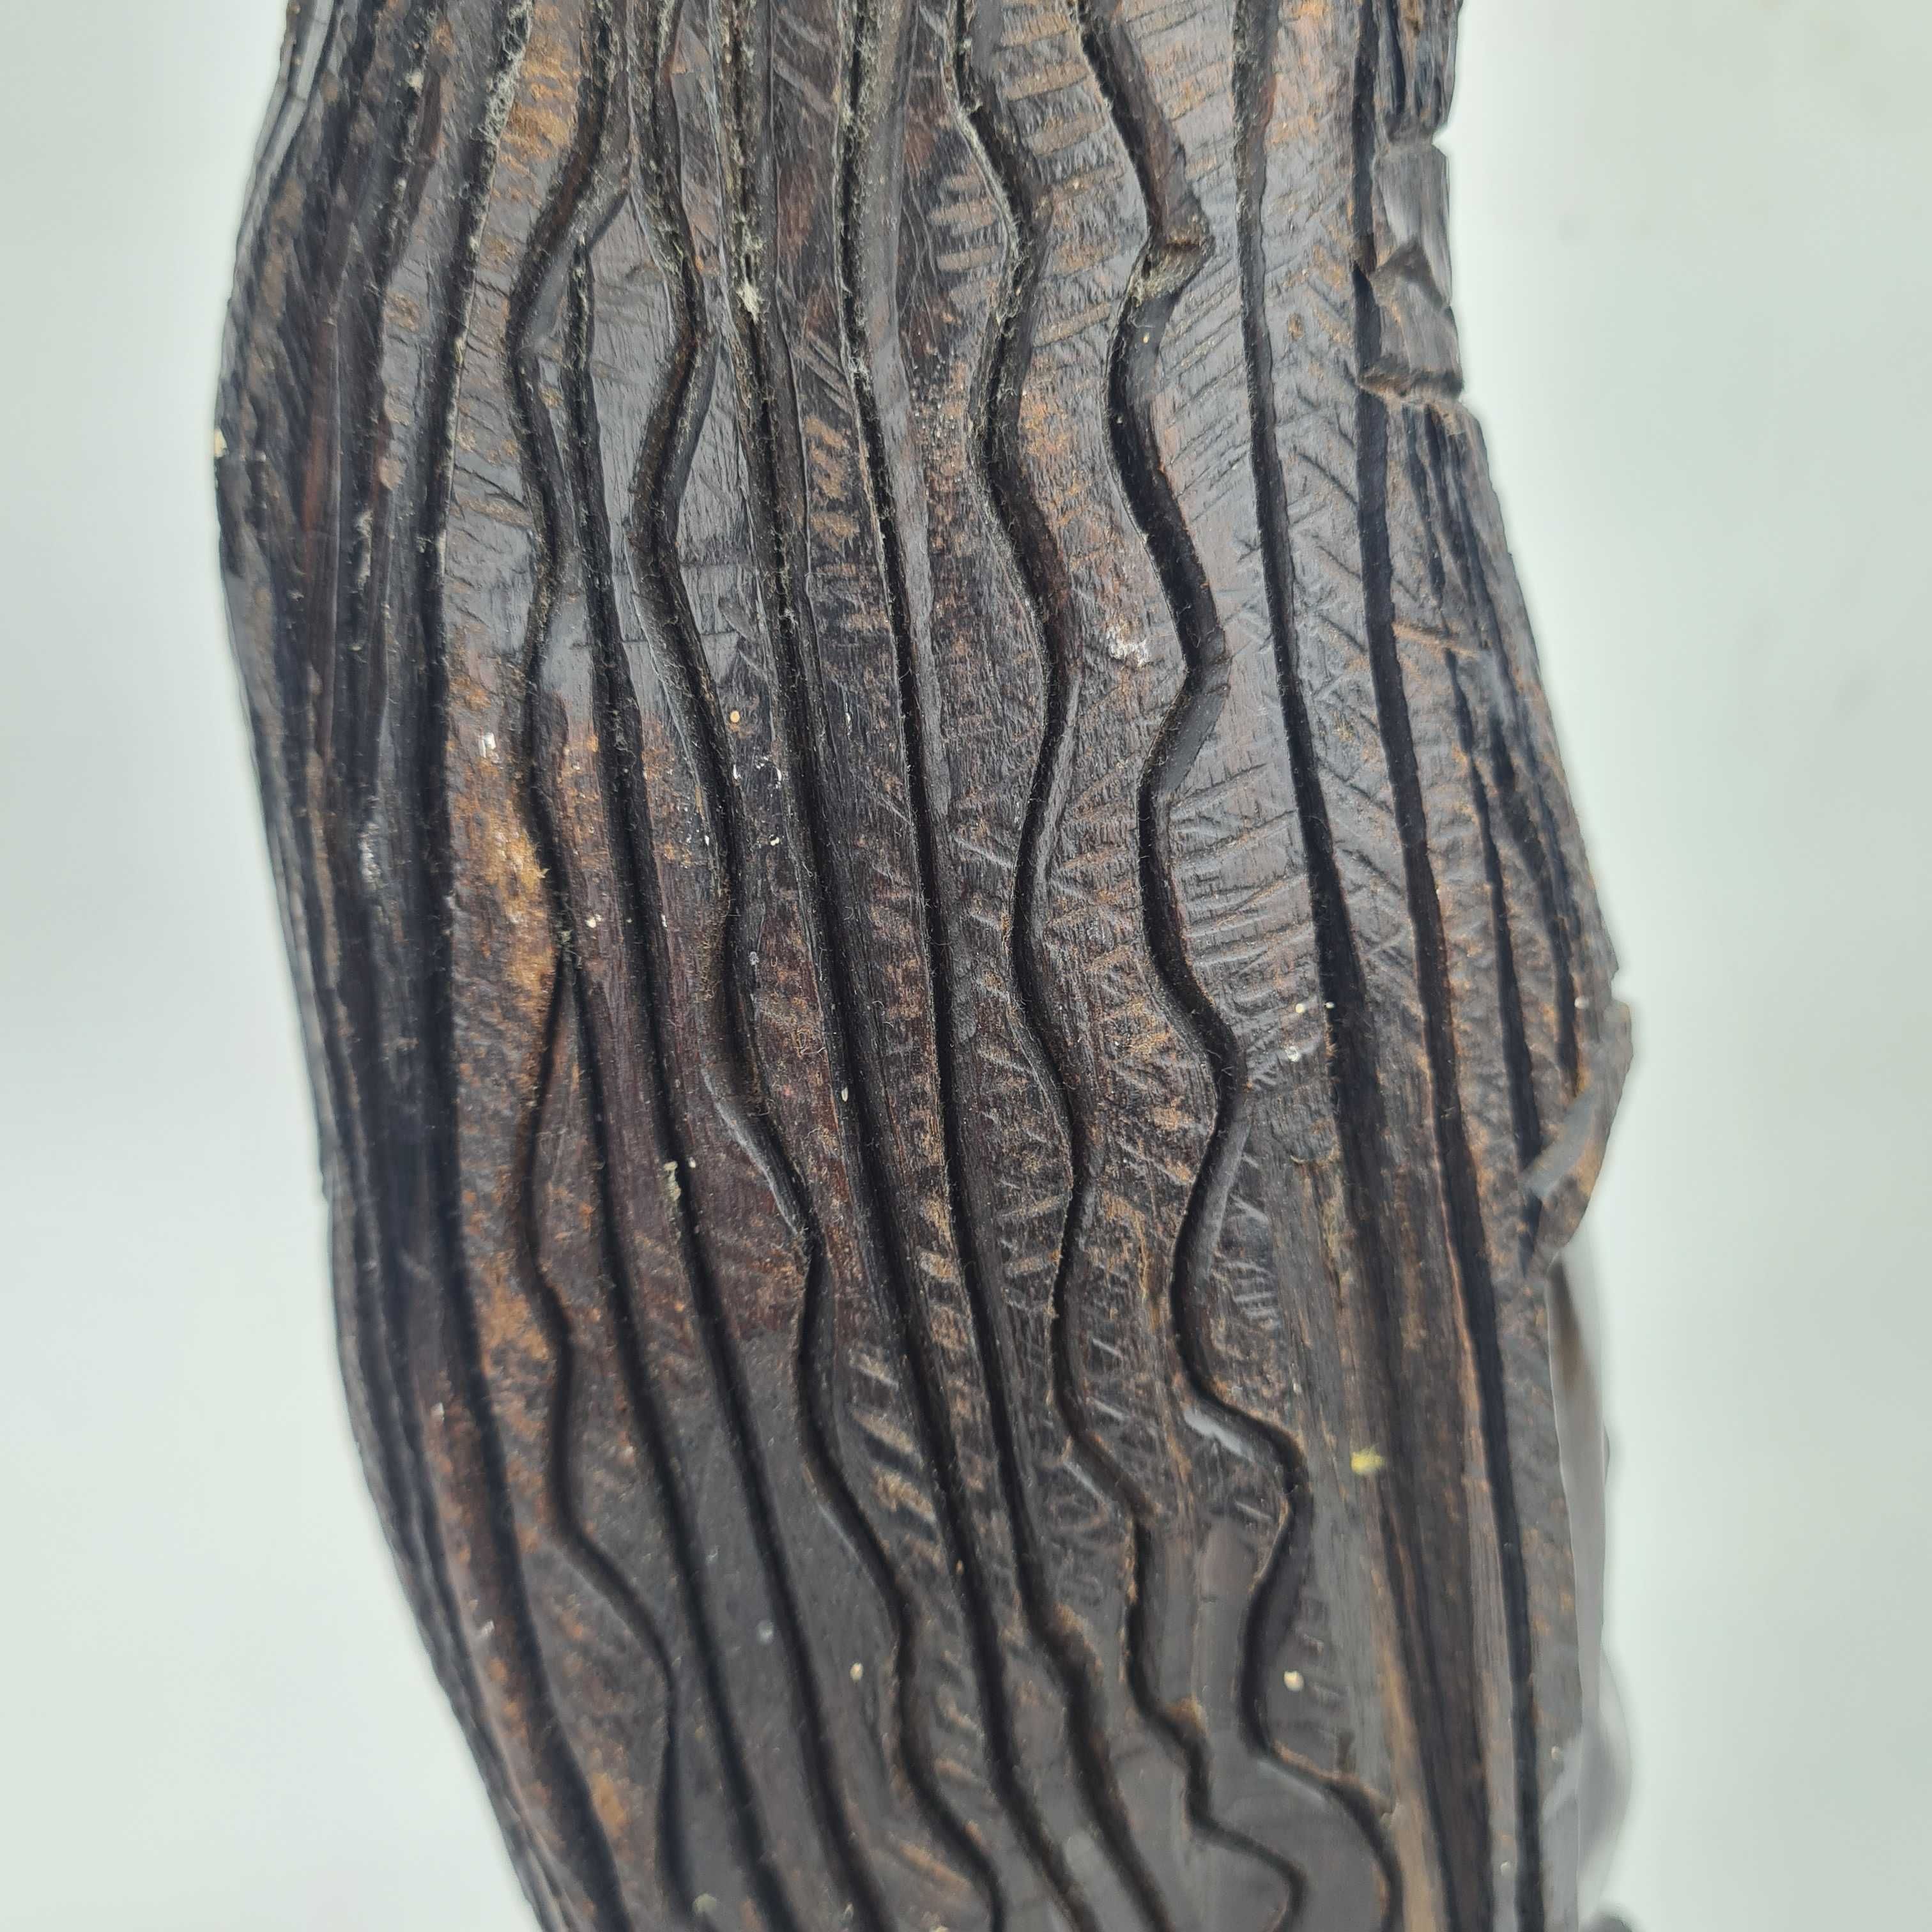 RZEŹBA drewniana z hebanu motyw afrykański wysoka na około 42cm